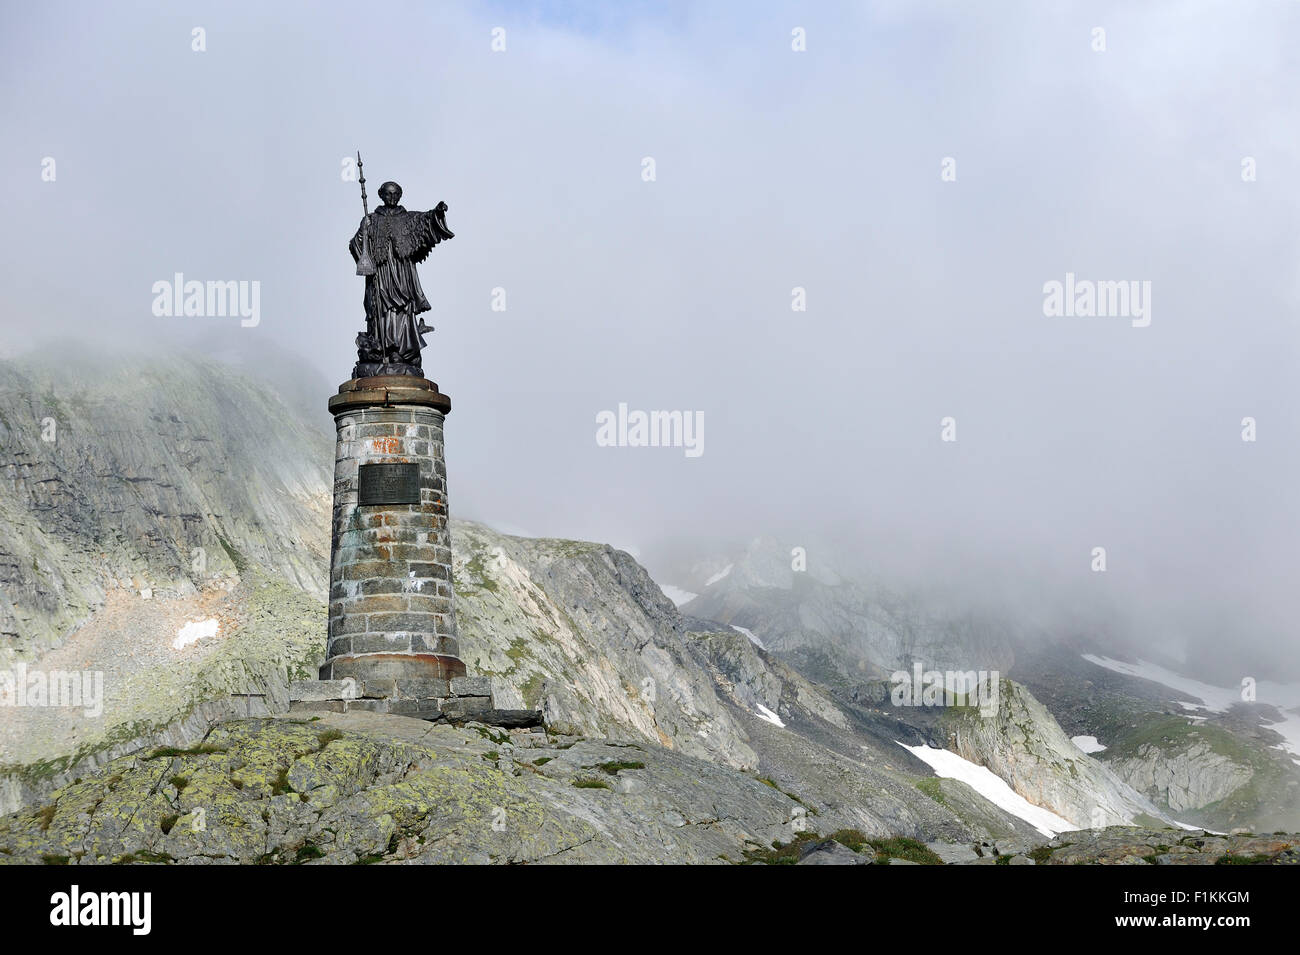 Statue de Saint Bernard au grand St Bernard Pass / Col du Grand-Saint-Bernard dans les Alpes Suisses, Suisse Banque D'Images